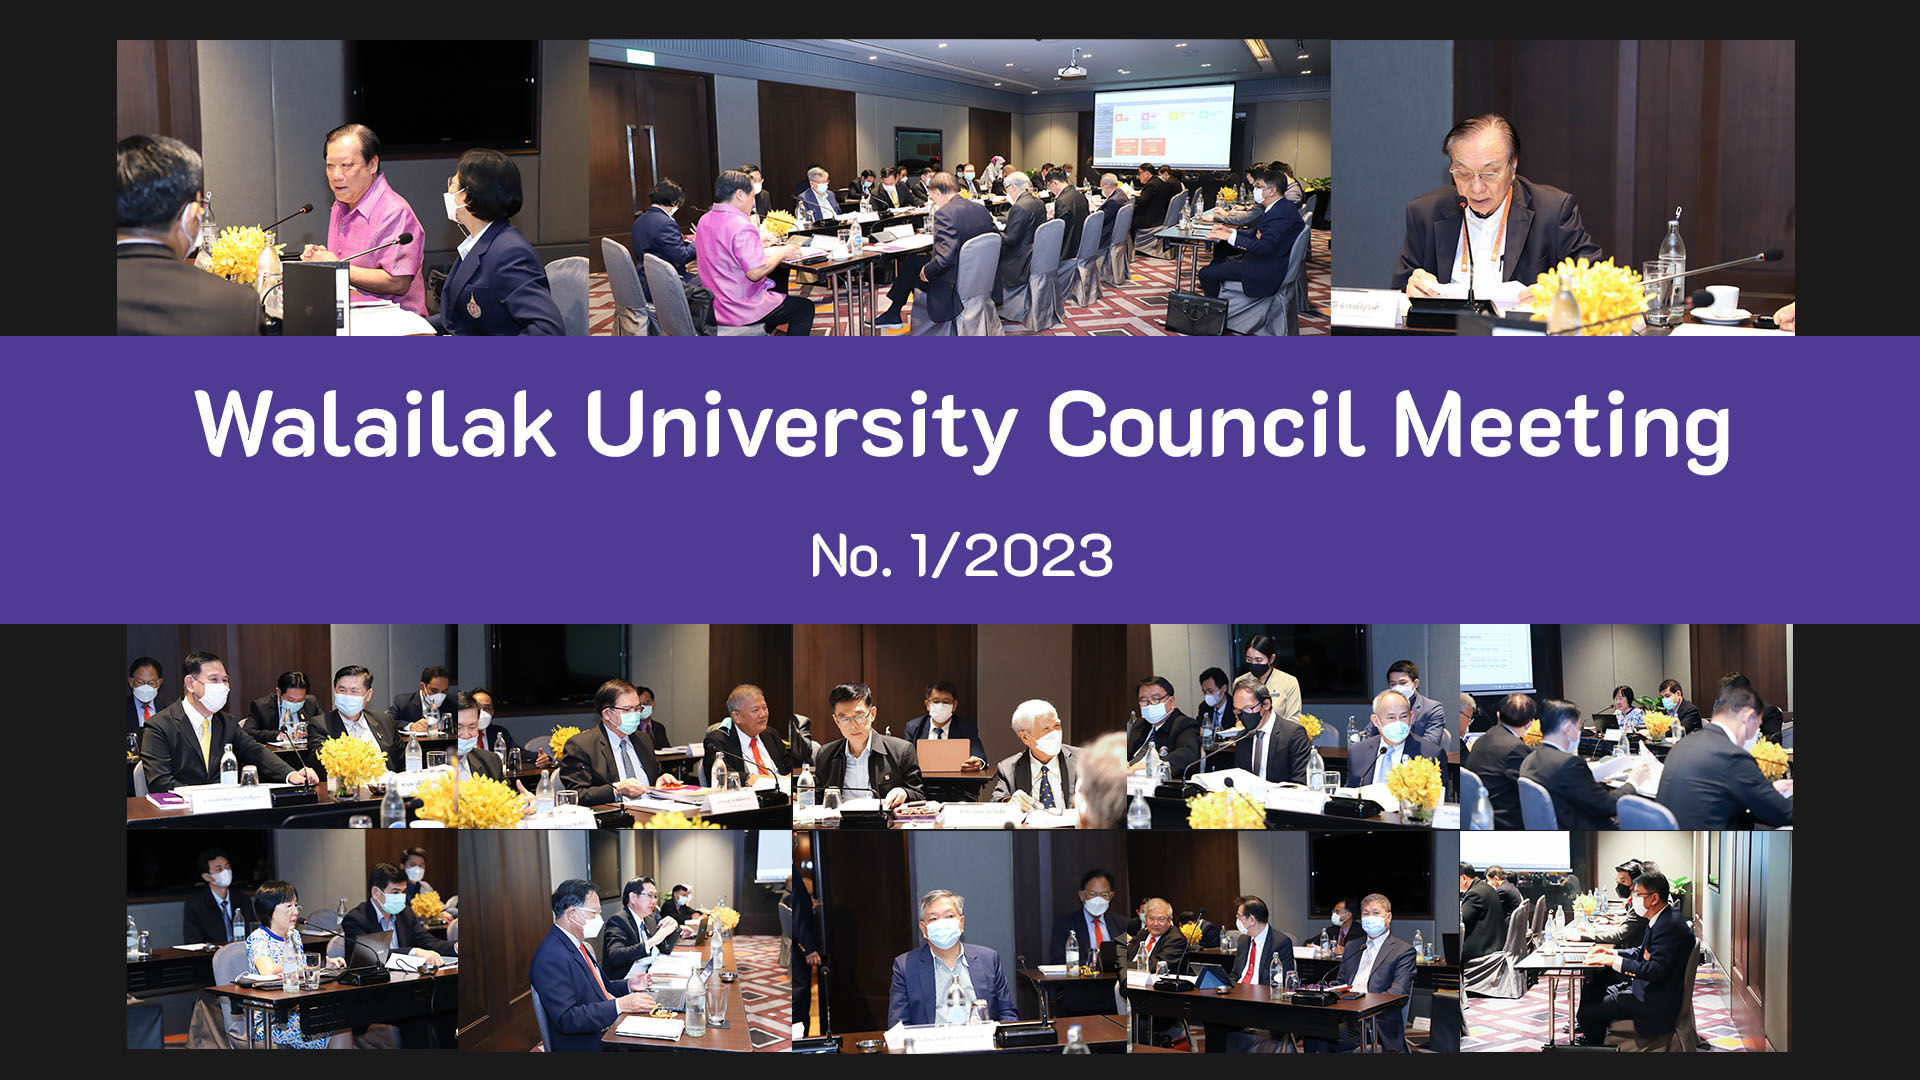 Walailak University Council Meeting No. 1/2023